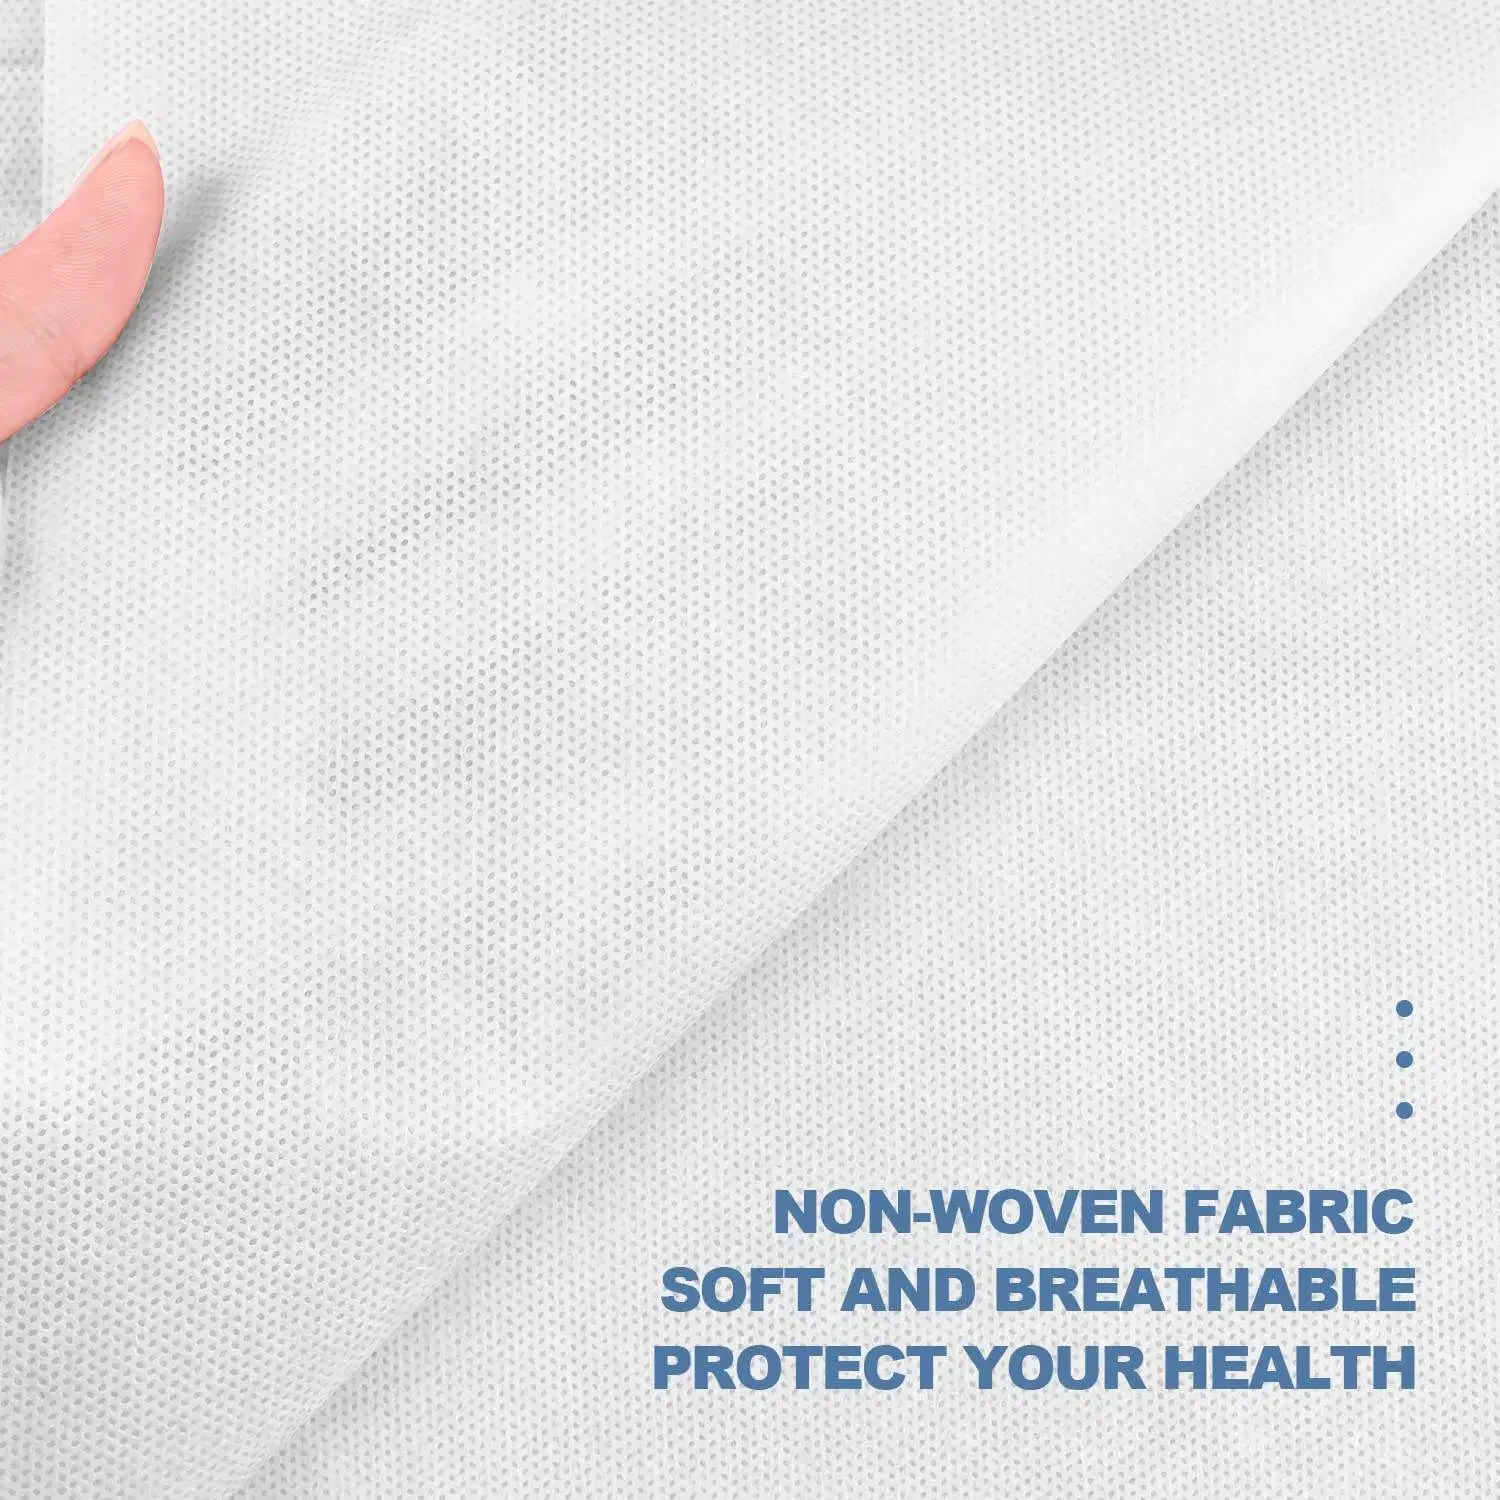 Customizable Disposable Sheets PP Nonwoven Non-Woven Fabric Non-Woven Sheets for Hospital Surgery